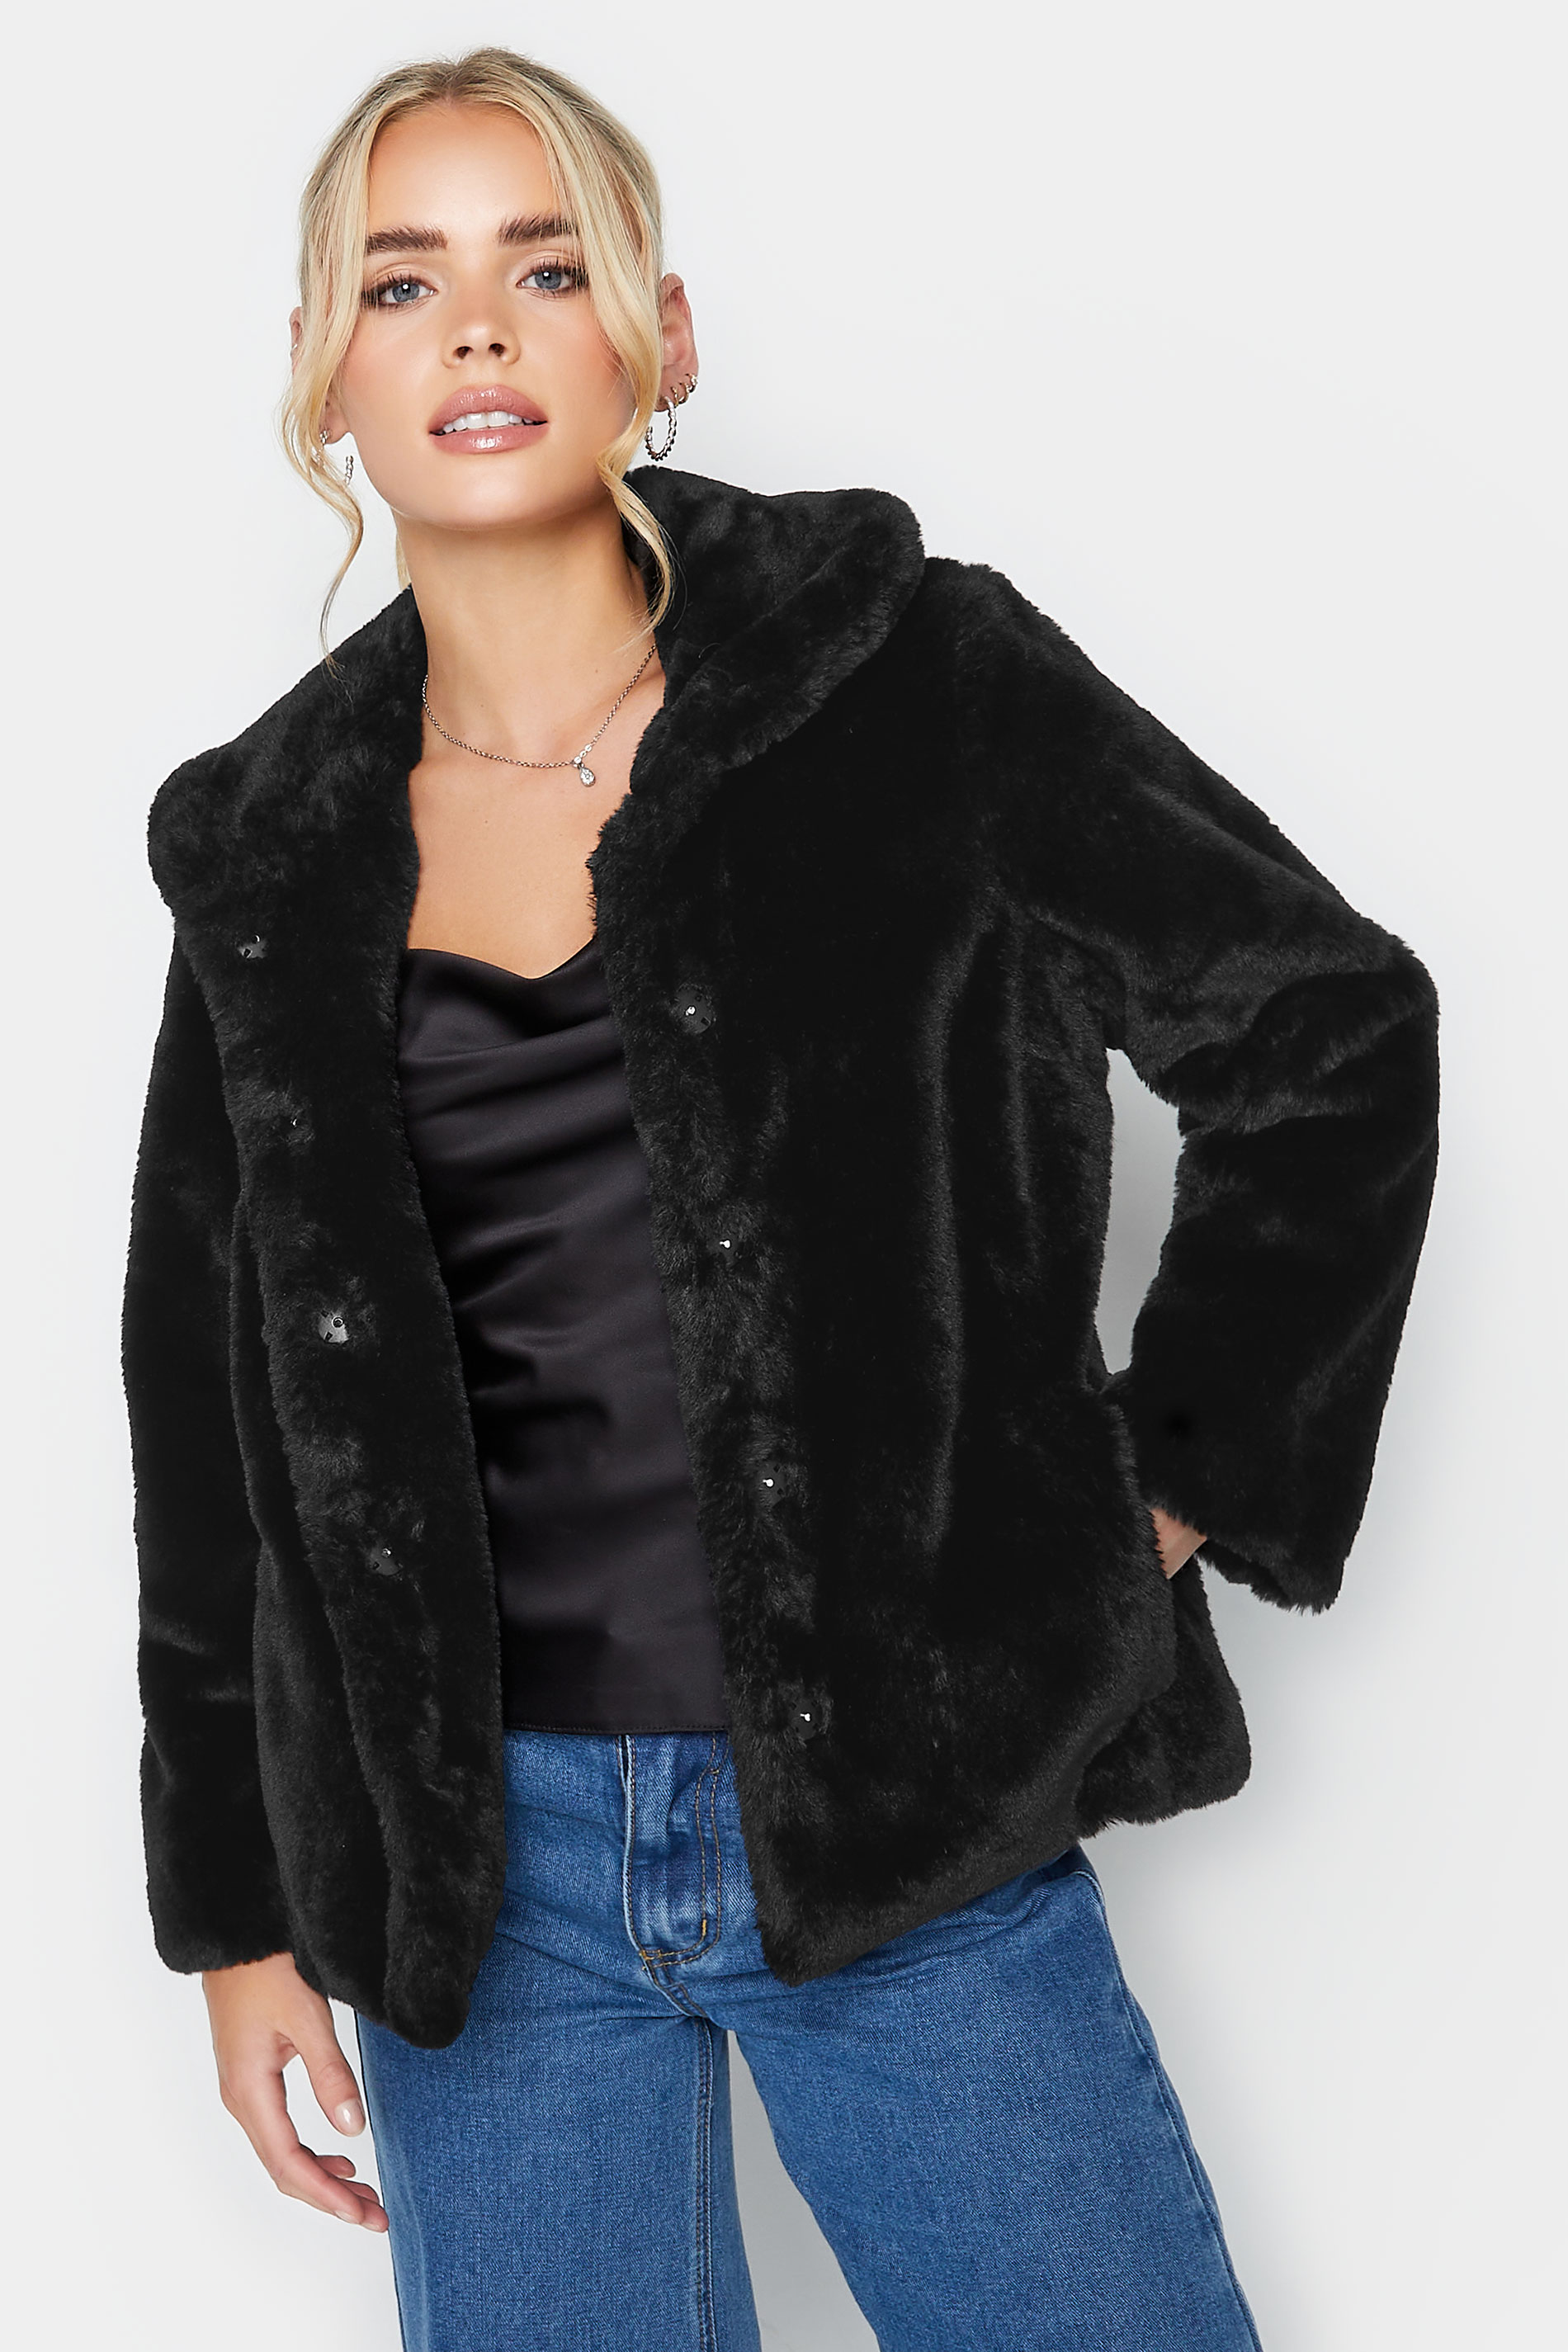 Pixiegirl Black Faux Fur Coat 10 Pixiegirl | Petite Women's Petite Coats